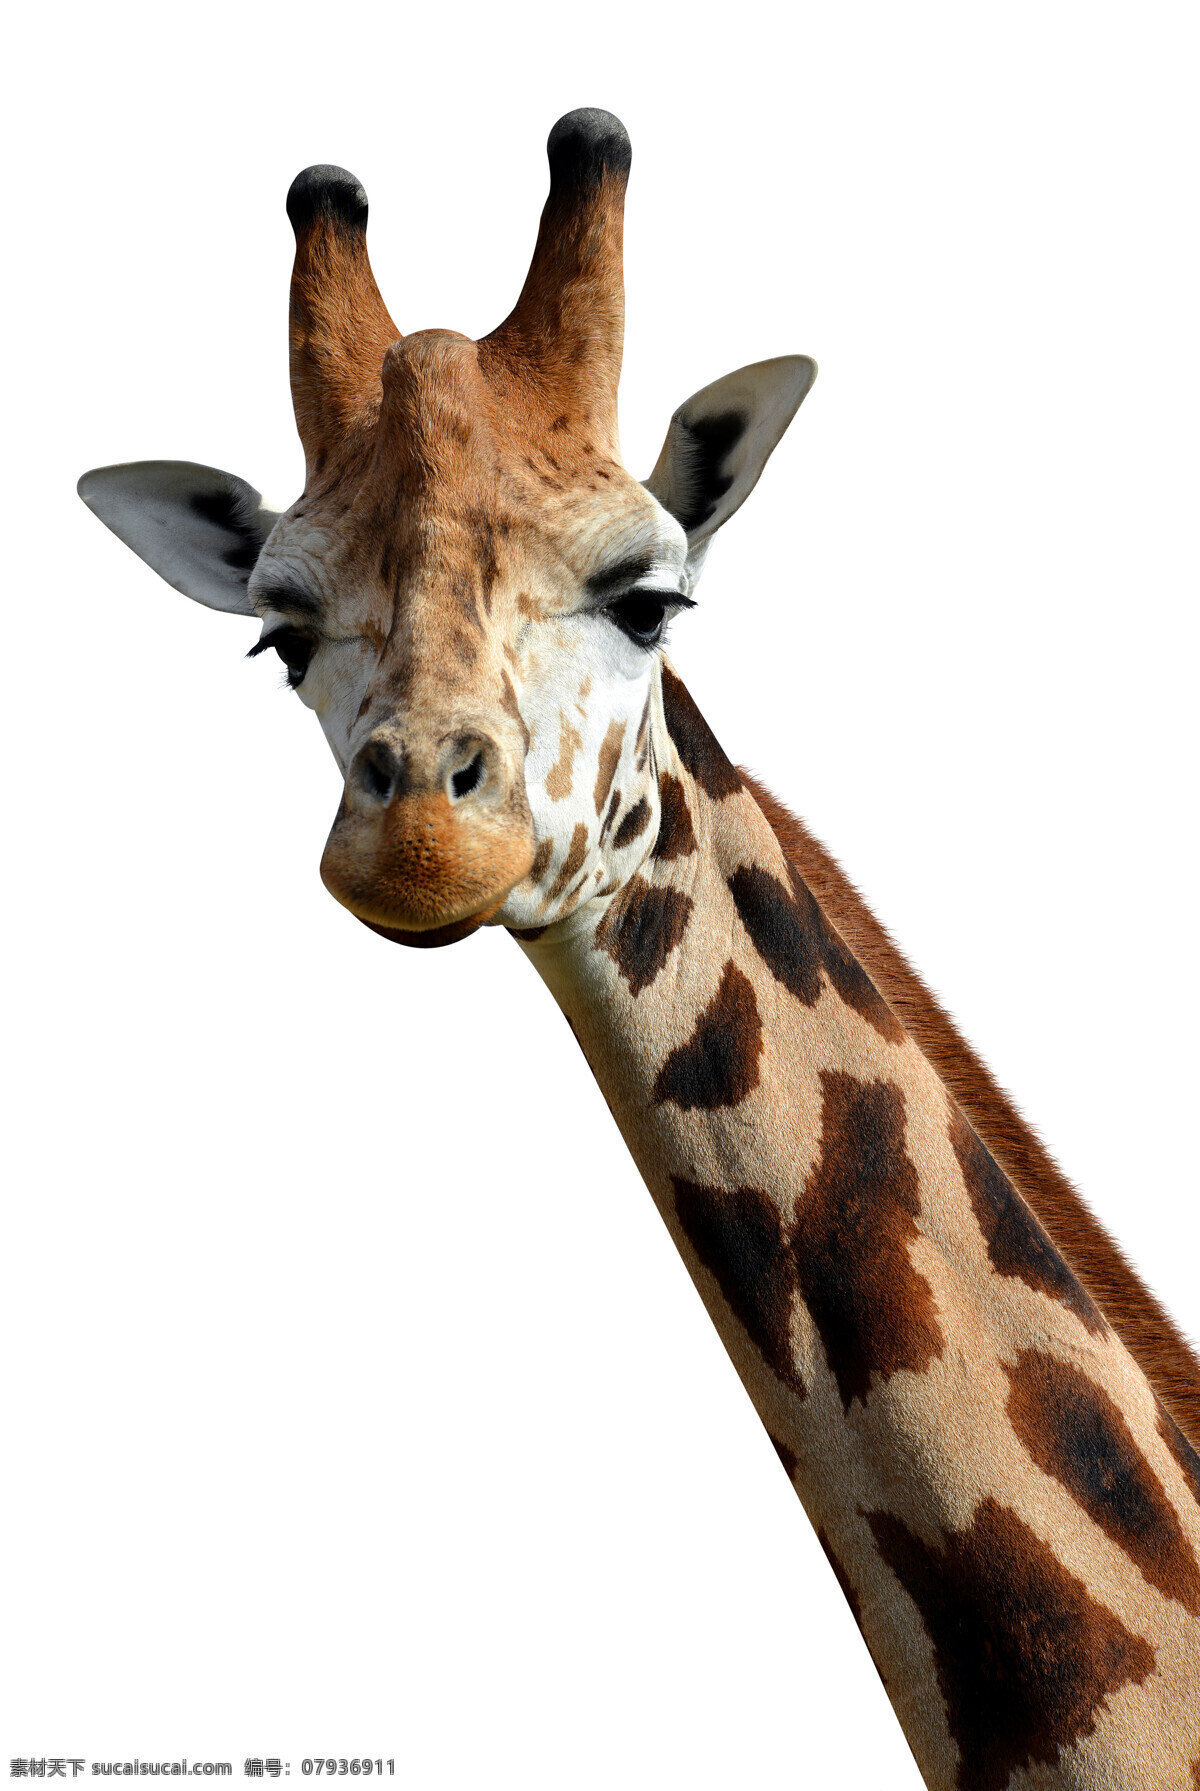 长颈鹿 长颈鹿群 鹿 长脖鹿 陆生动物 草食动物 动物 生物世界 野生动物